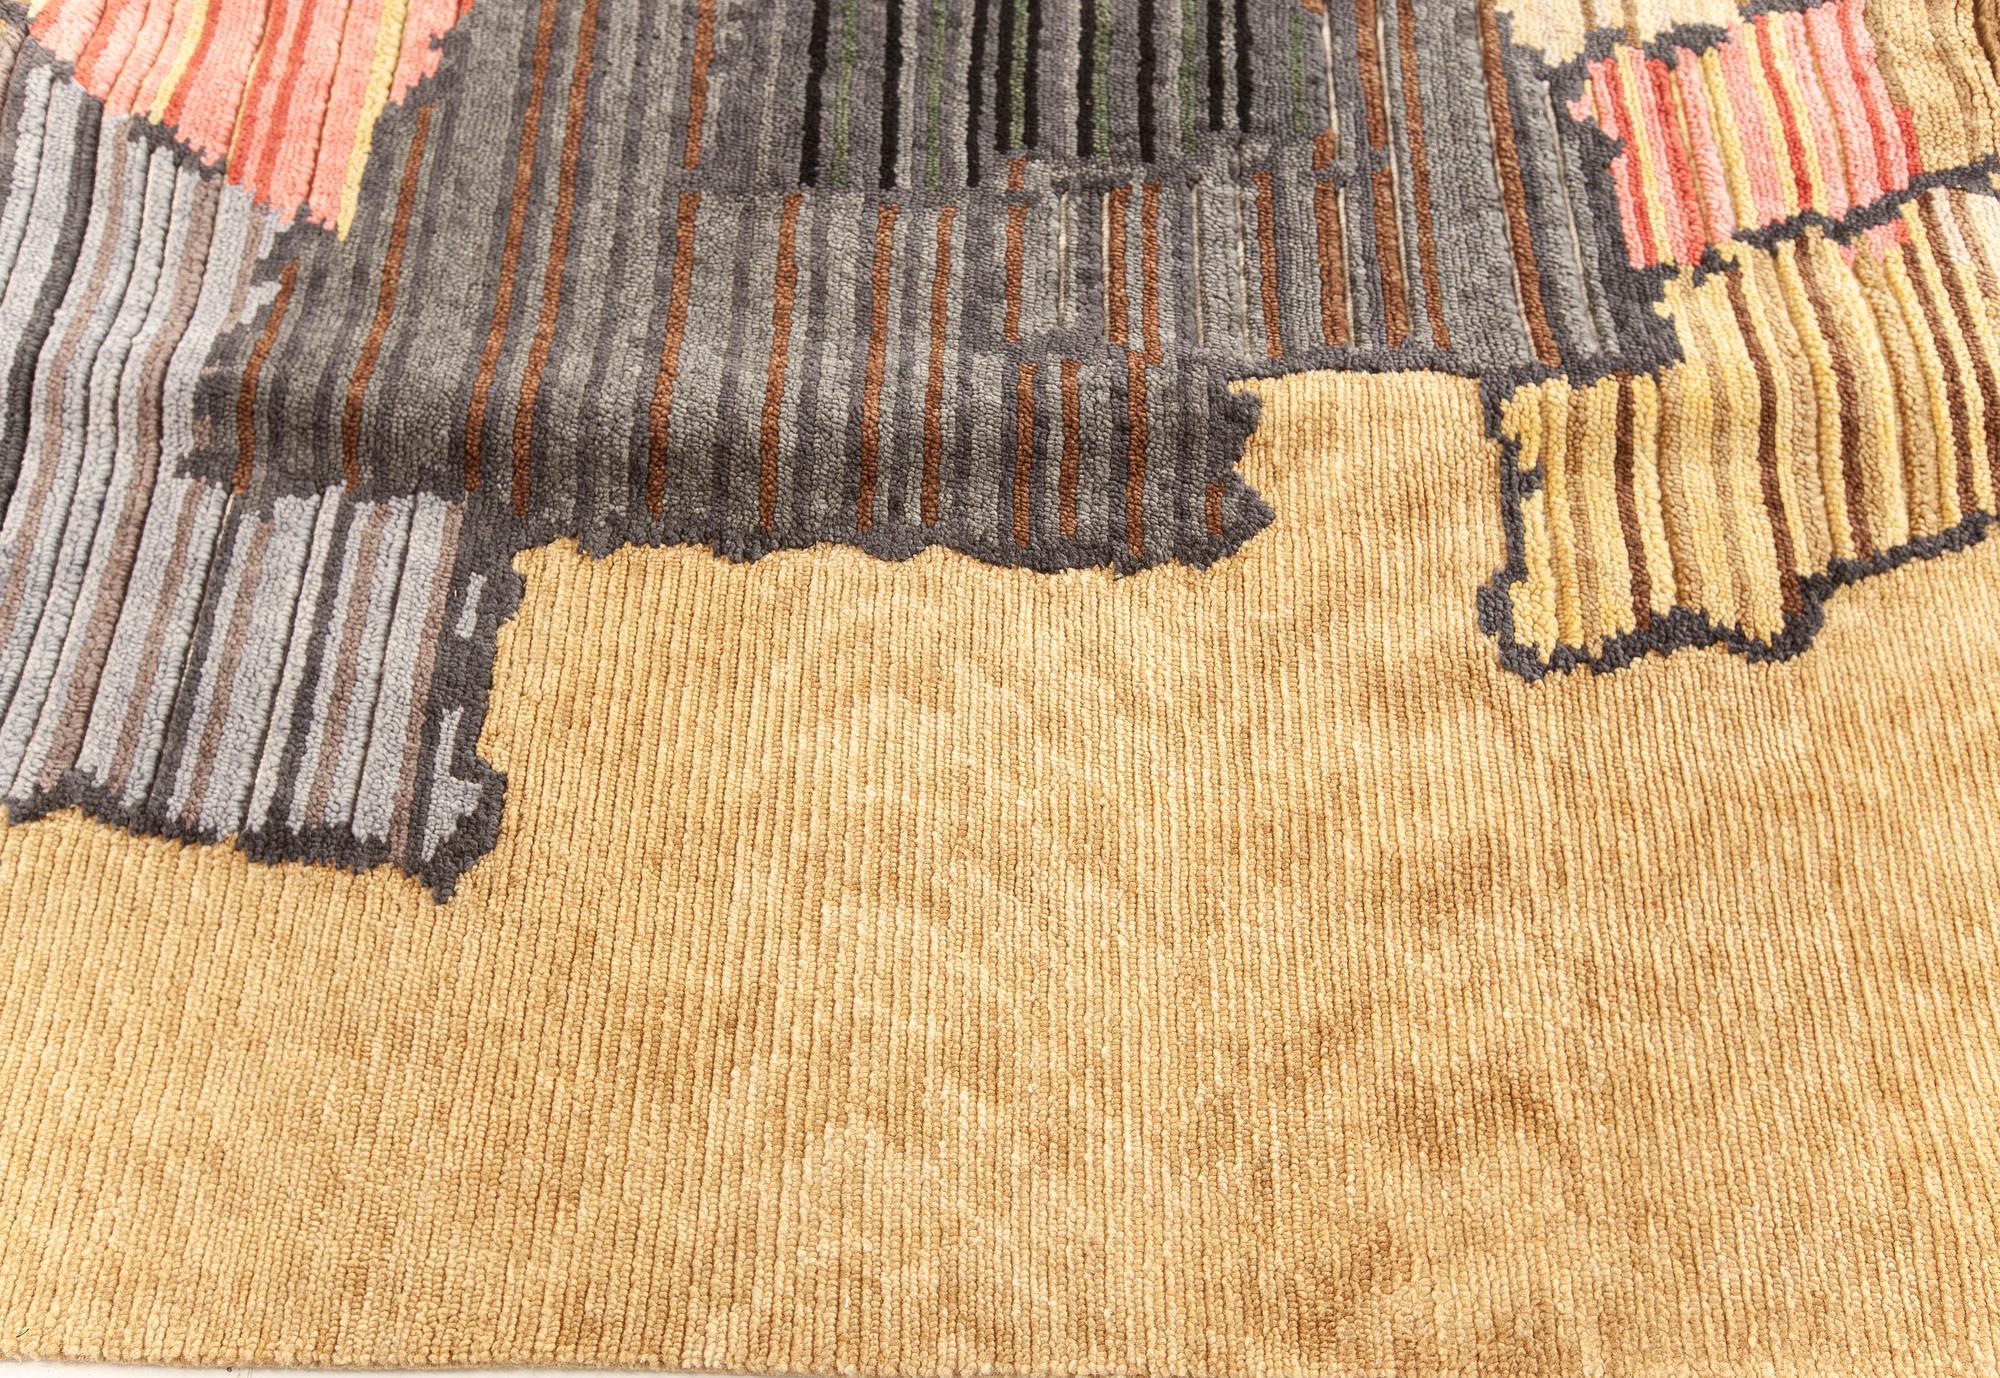 Contemporary Sauron textural rug by Doris Leslie Blau.
Size: 15'2